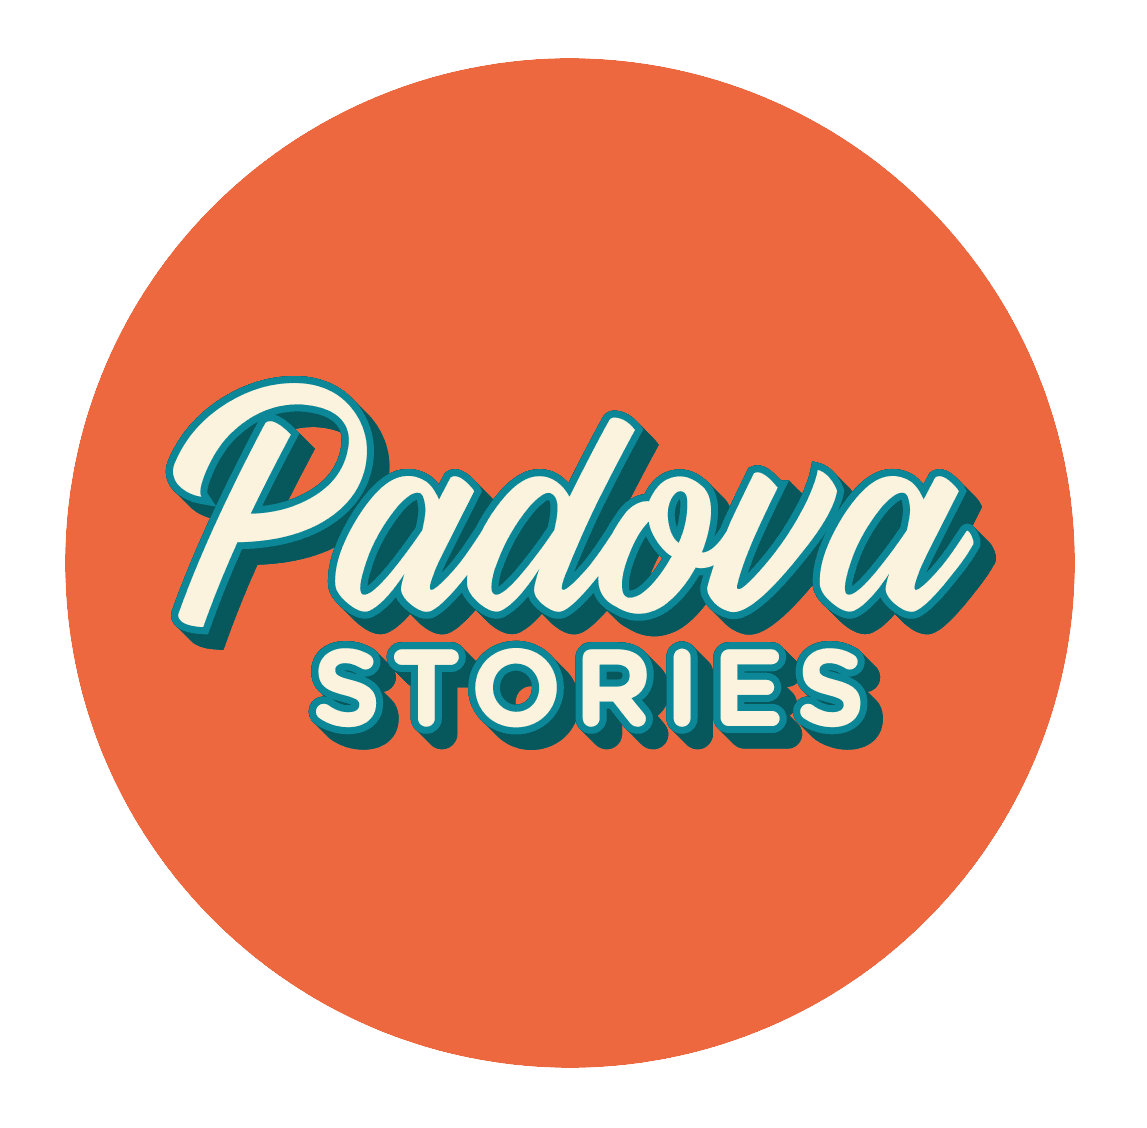 Suono su Padova Stories